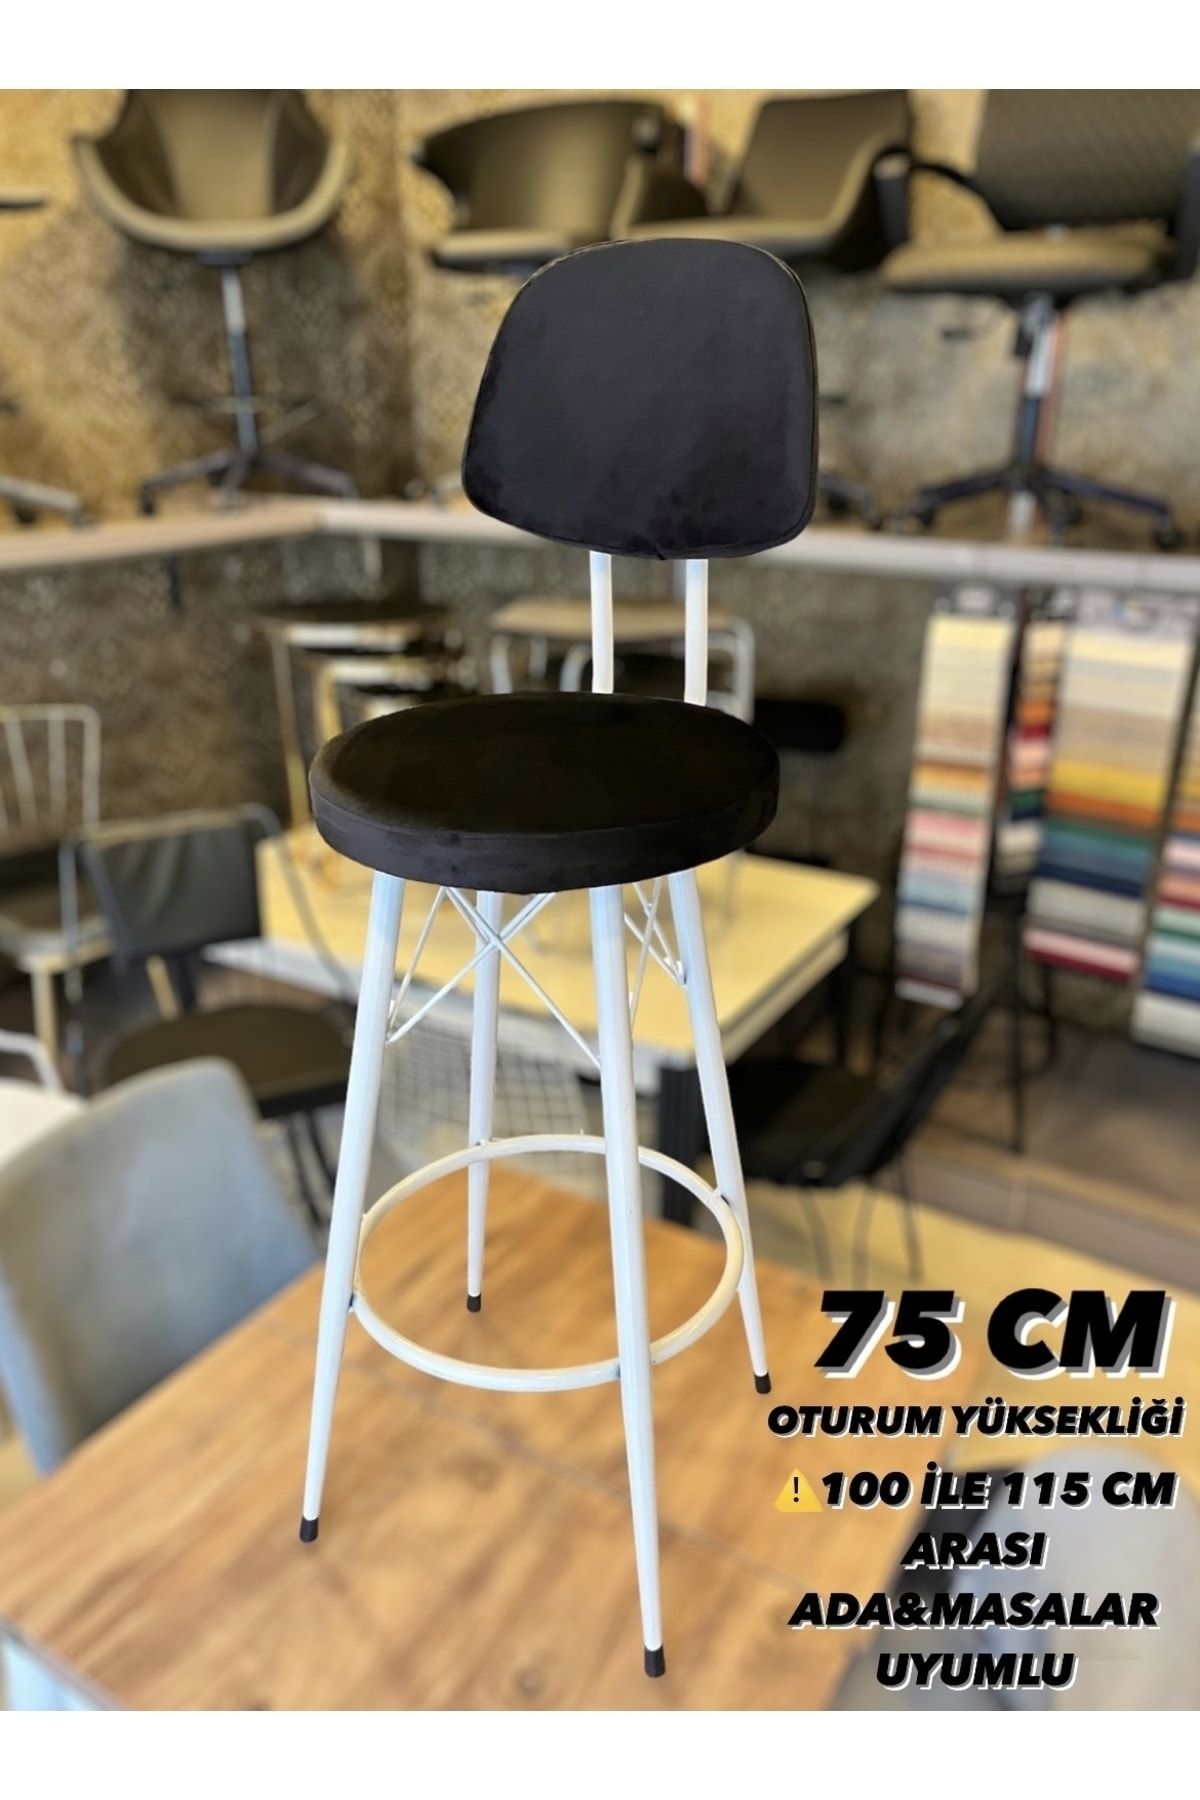 Sandalye Shop Yeni,Dolce Tasarım BabyFace Kumaş Bar Sandalyesi 75 Cm.100 ile 115 cm Arası Adalara uyumlu